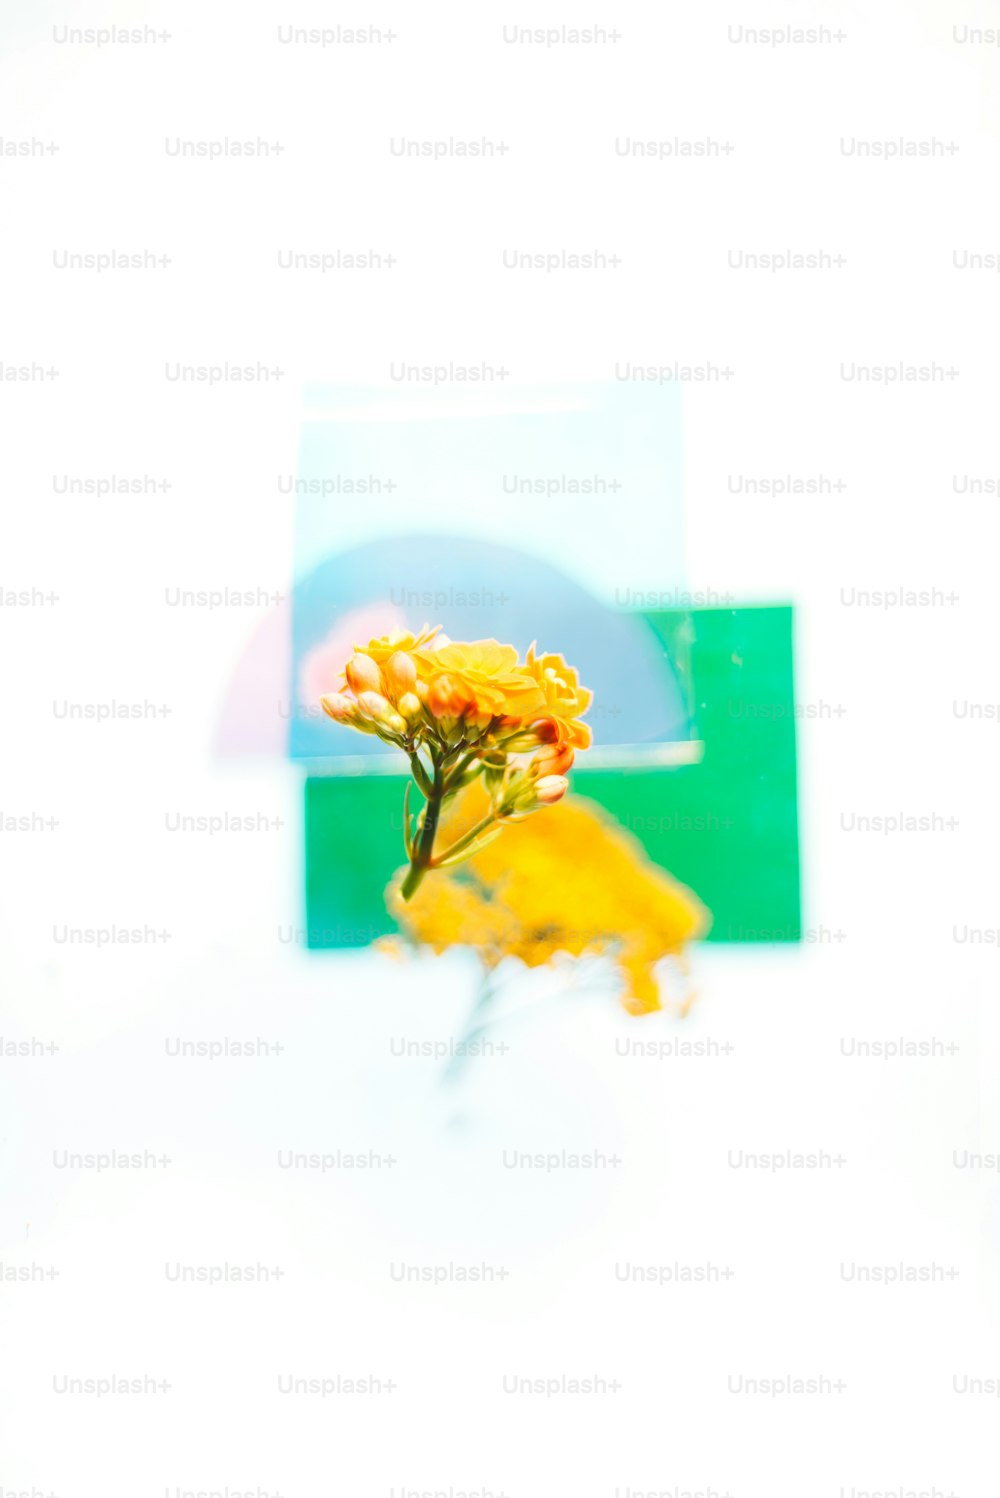 uma imagem de uma flor amarela na frente de um fundo branco